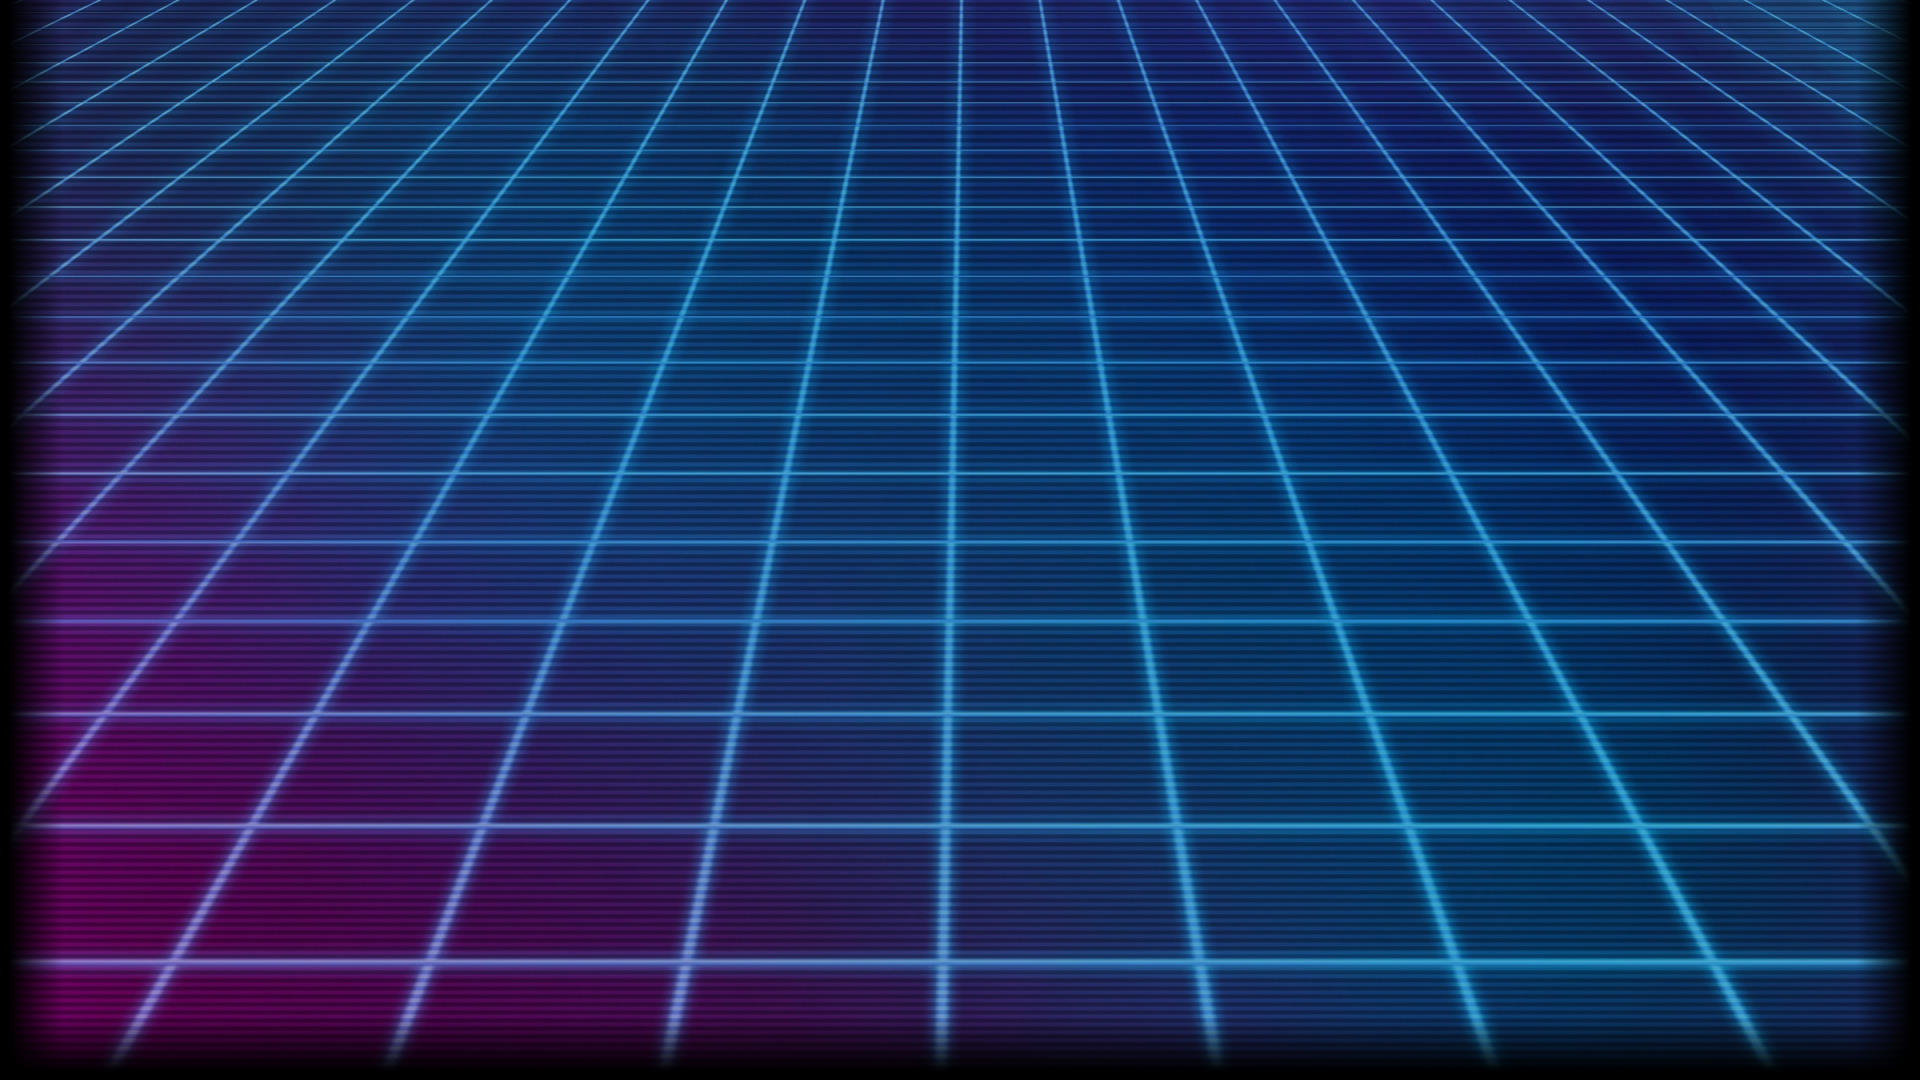 General 1920x1080 grid lines retrowave gradient neon glowing blue purple